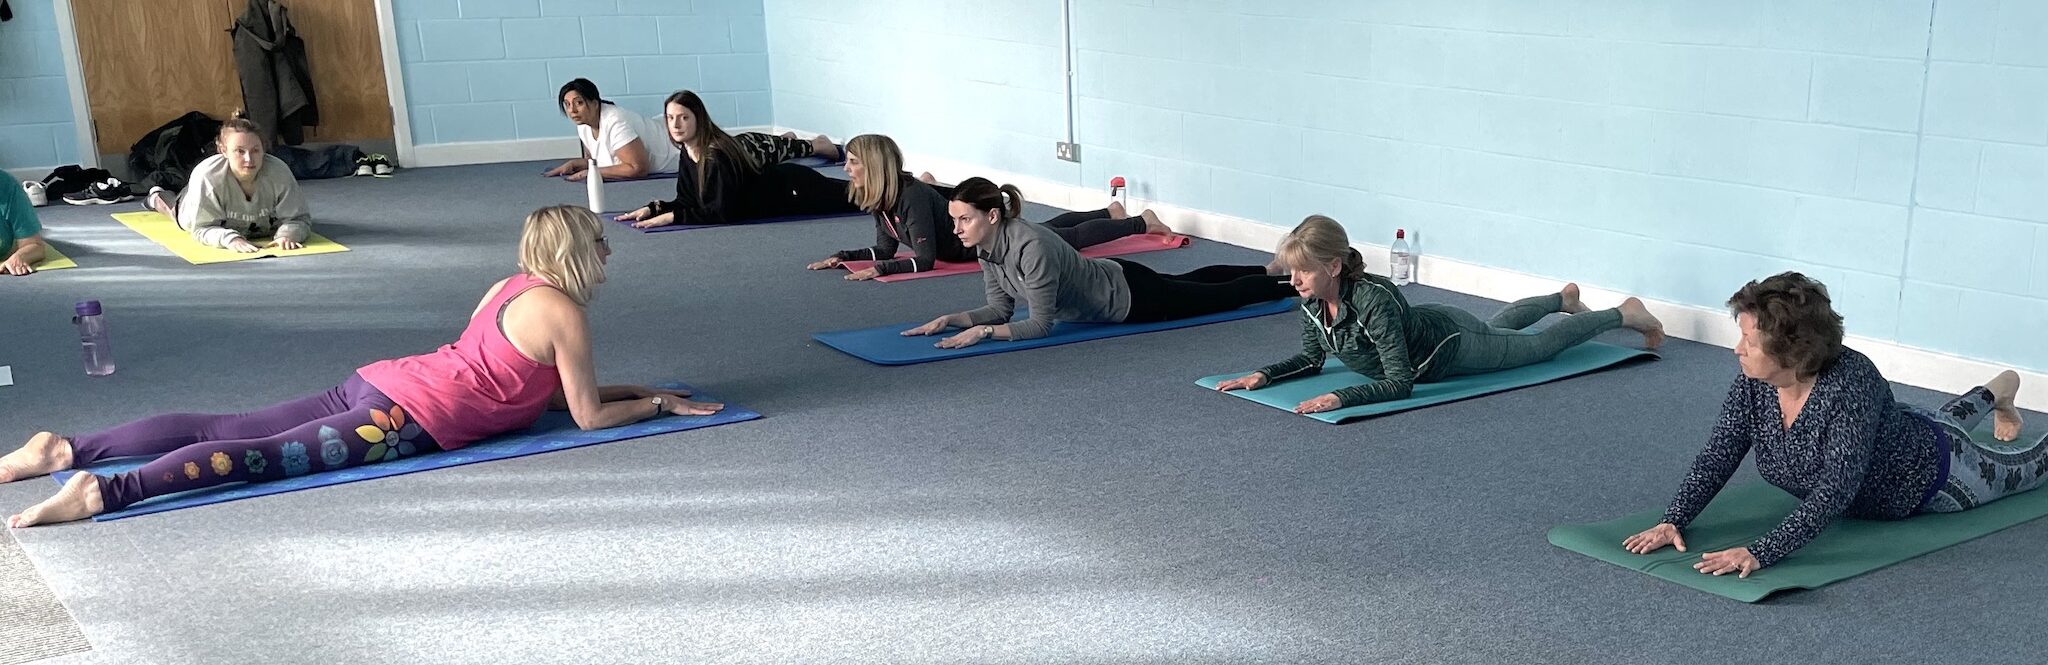 Dru yoga class stretching back